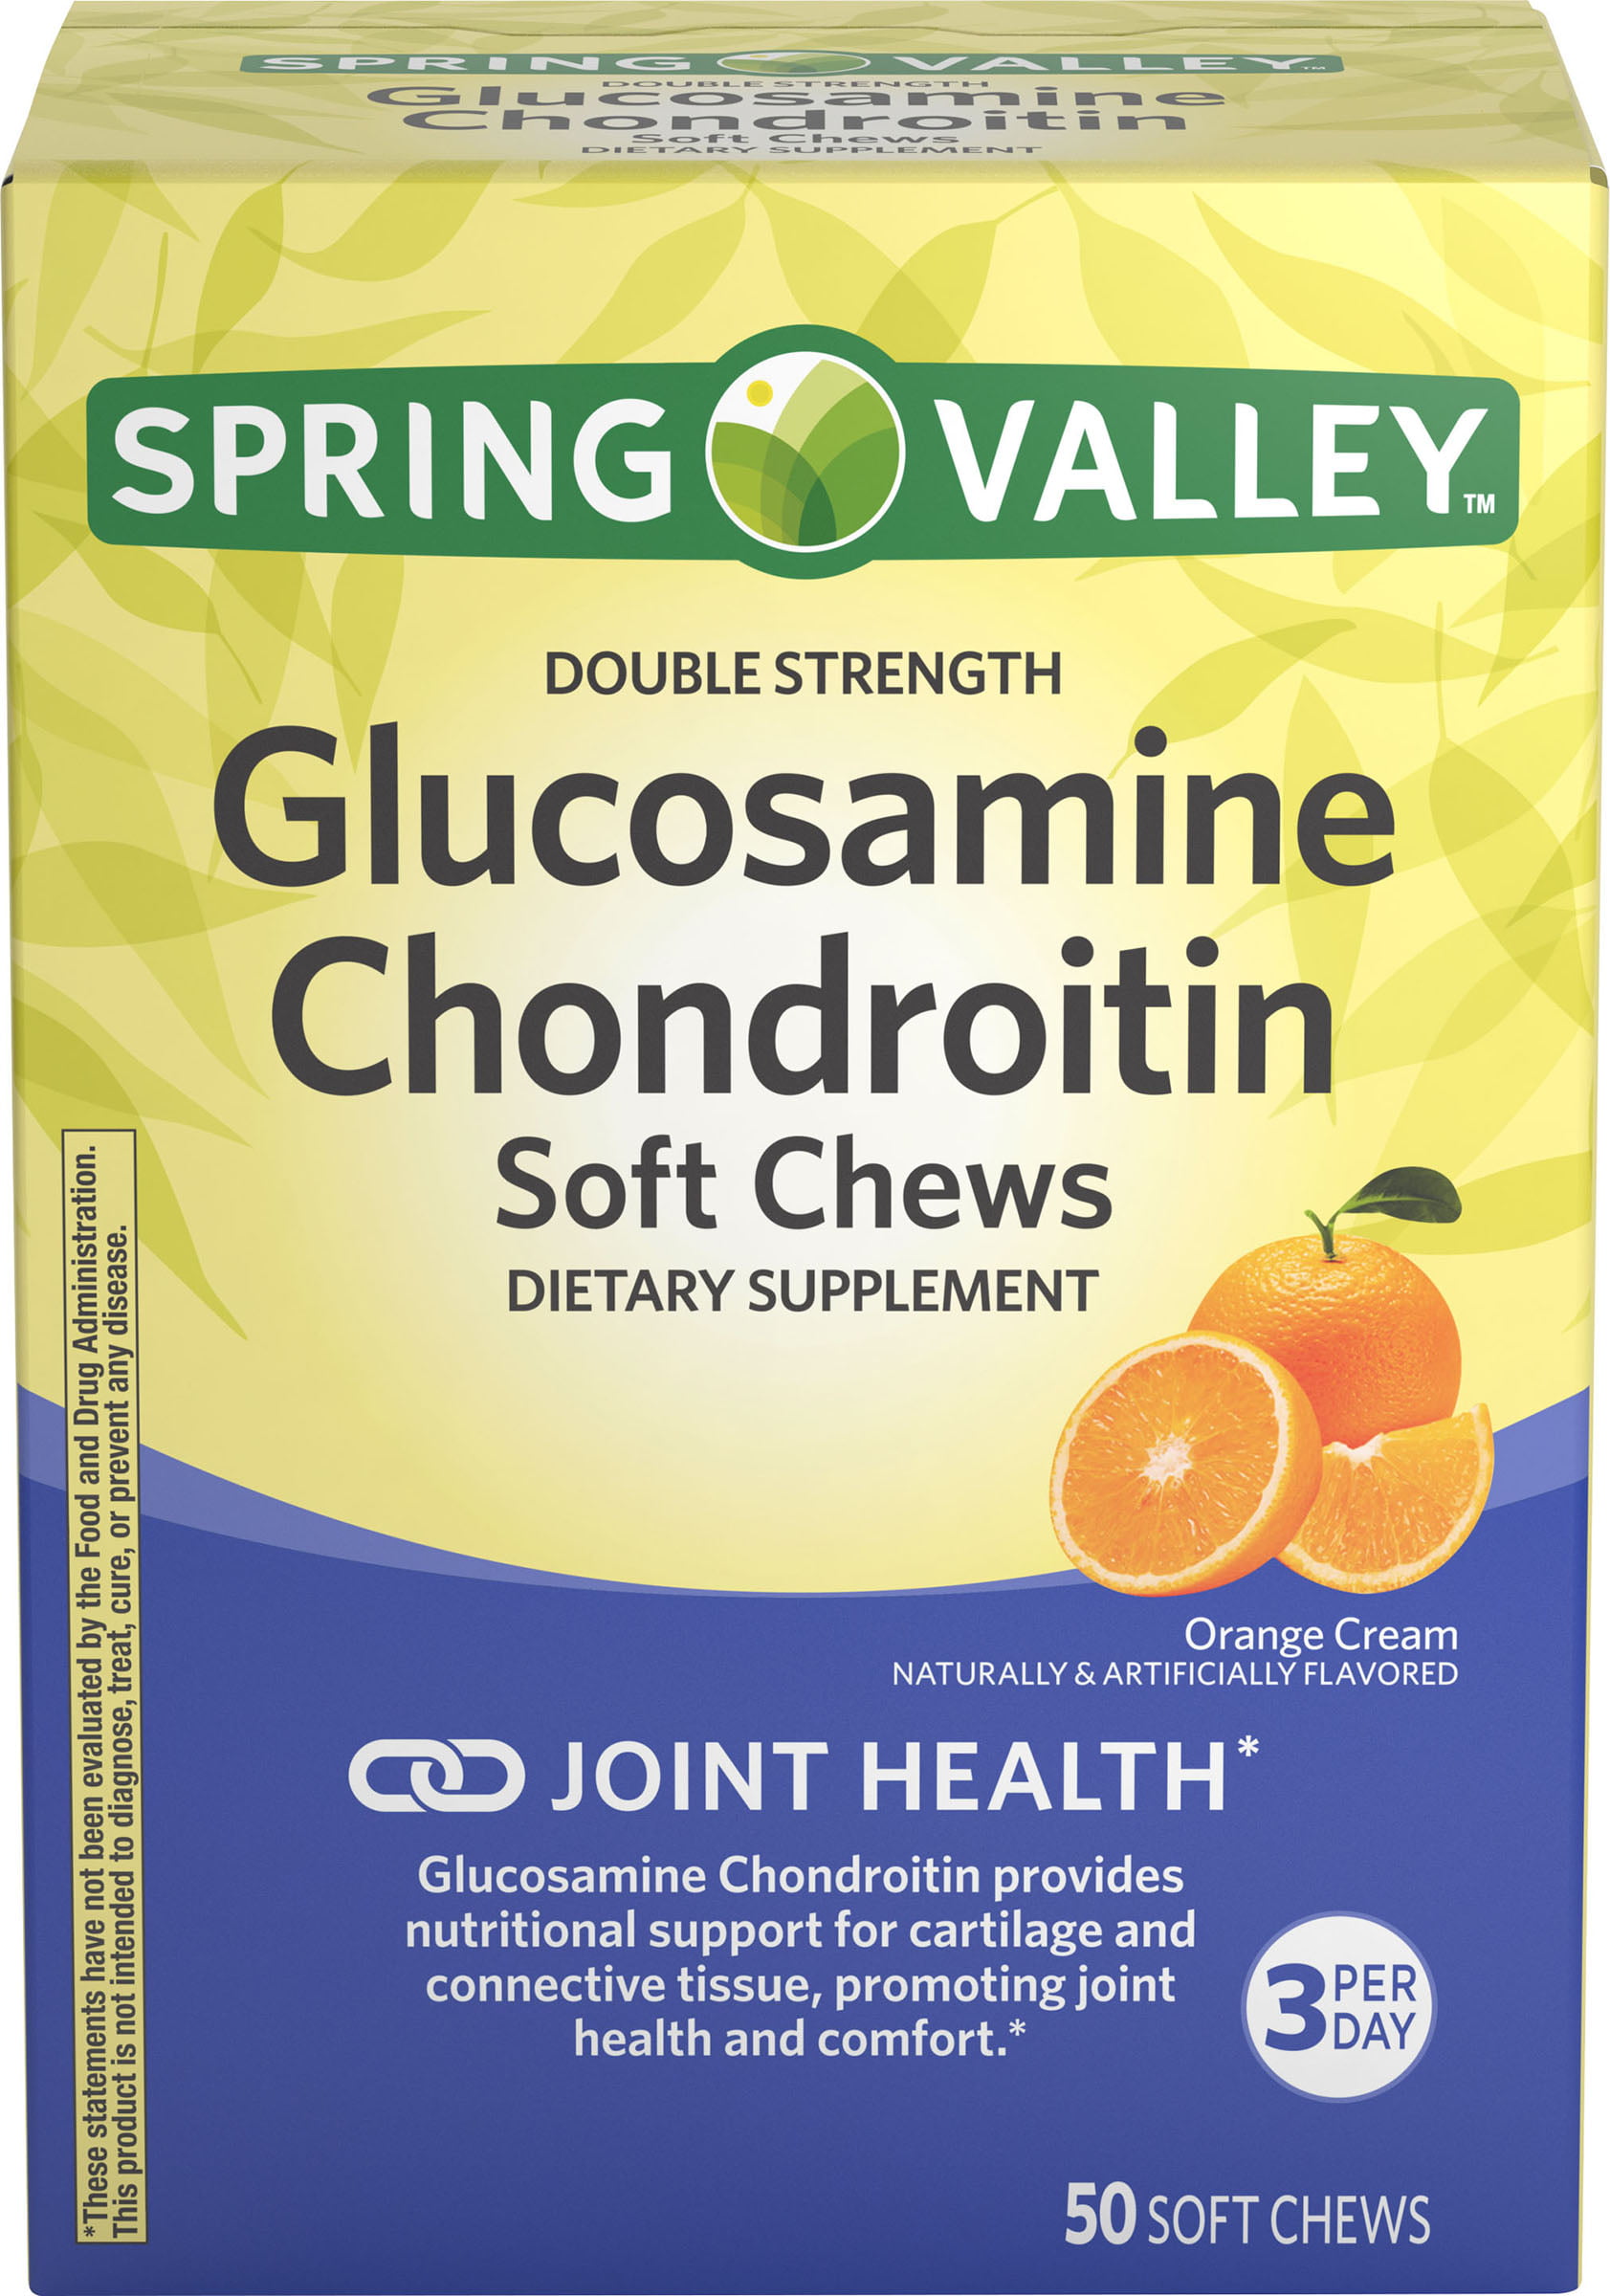 Spring Valley Glucosamine Chondroitin Soft Chews, Orange Cream Flavor